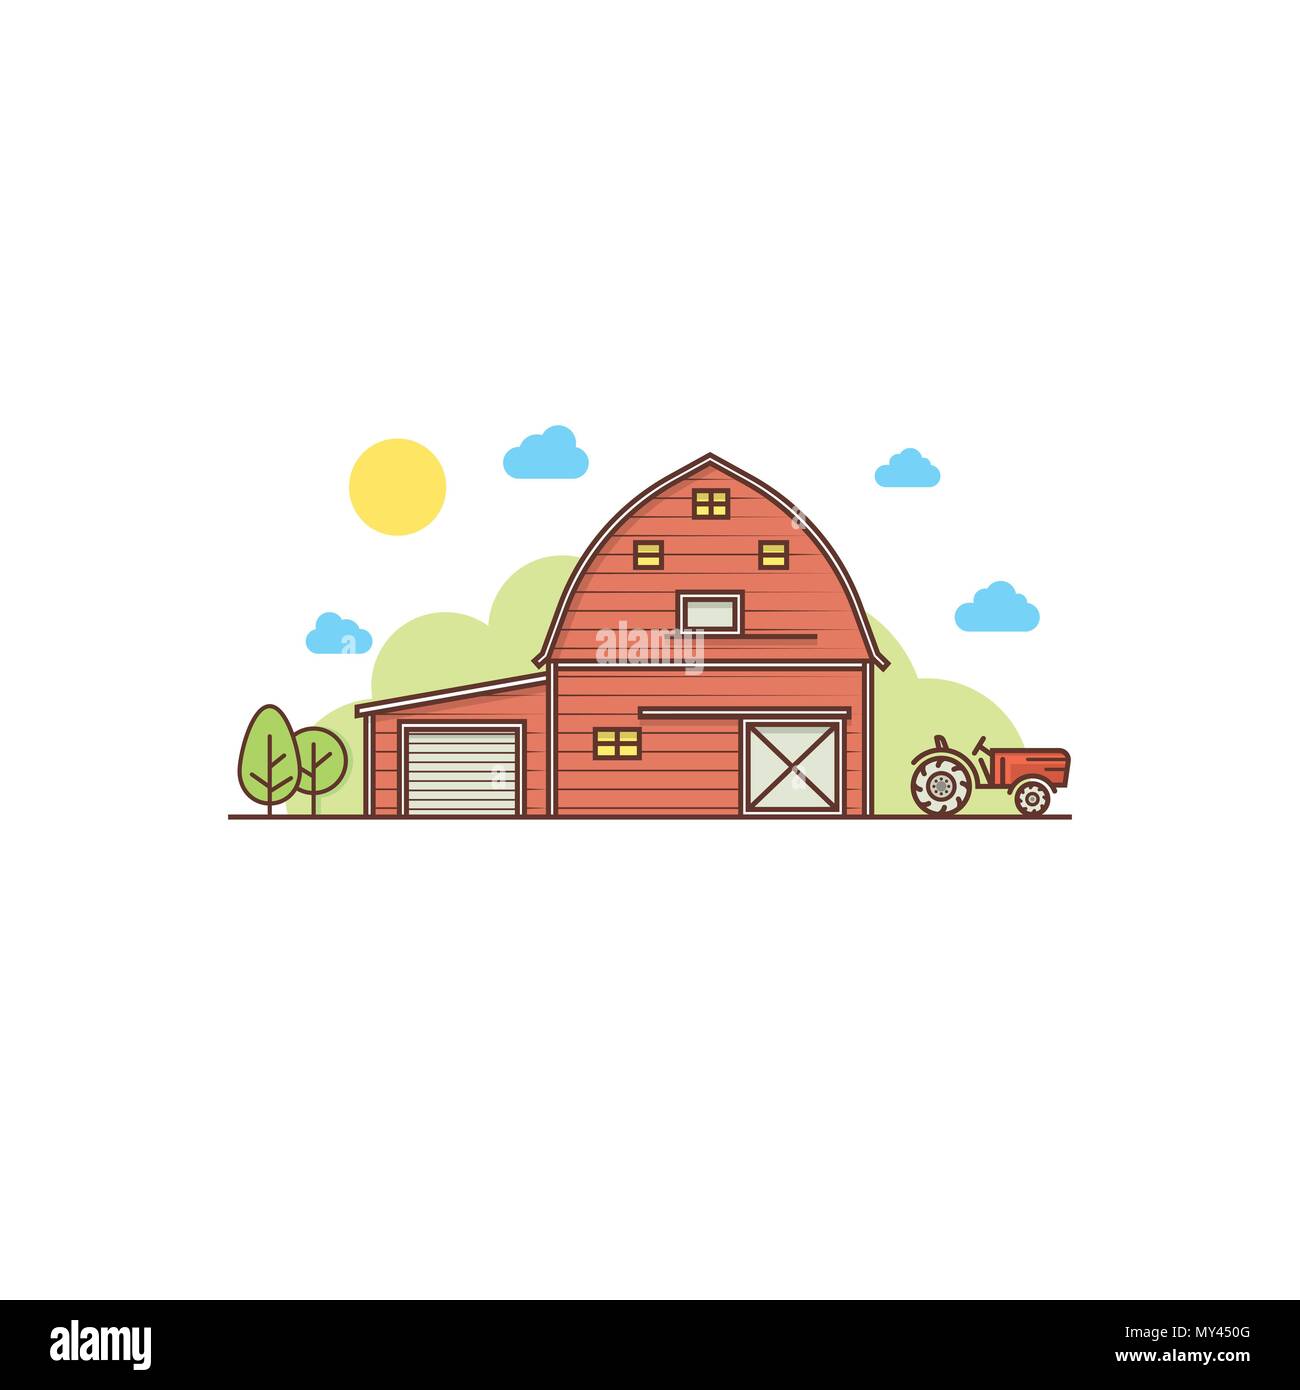 Thin Line American Farm Symbol. Für web design und Application Interface, auch nützlich für Infografiken. Vector Illustration. Stock Vektor